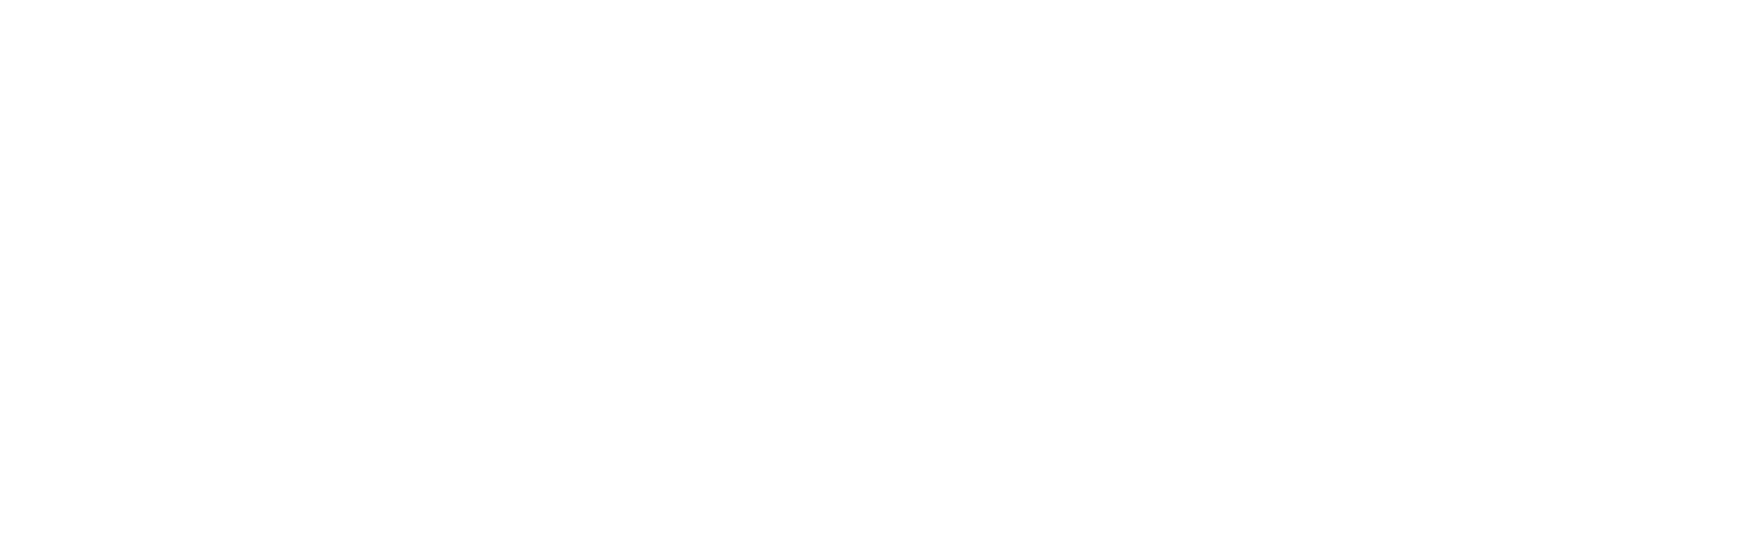 Fitucci Logo White